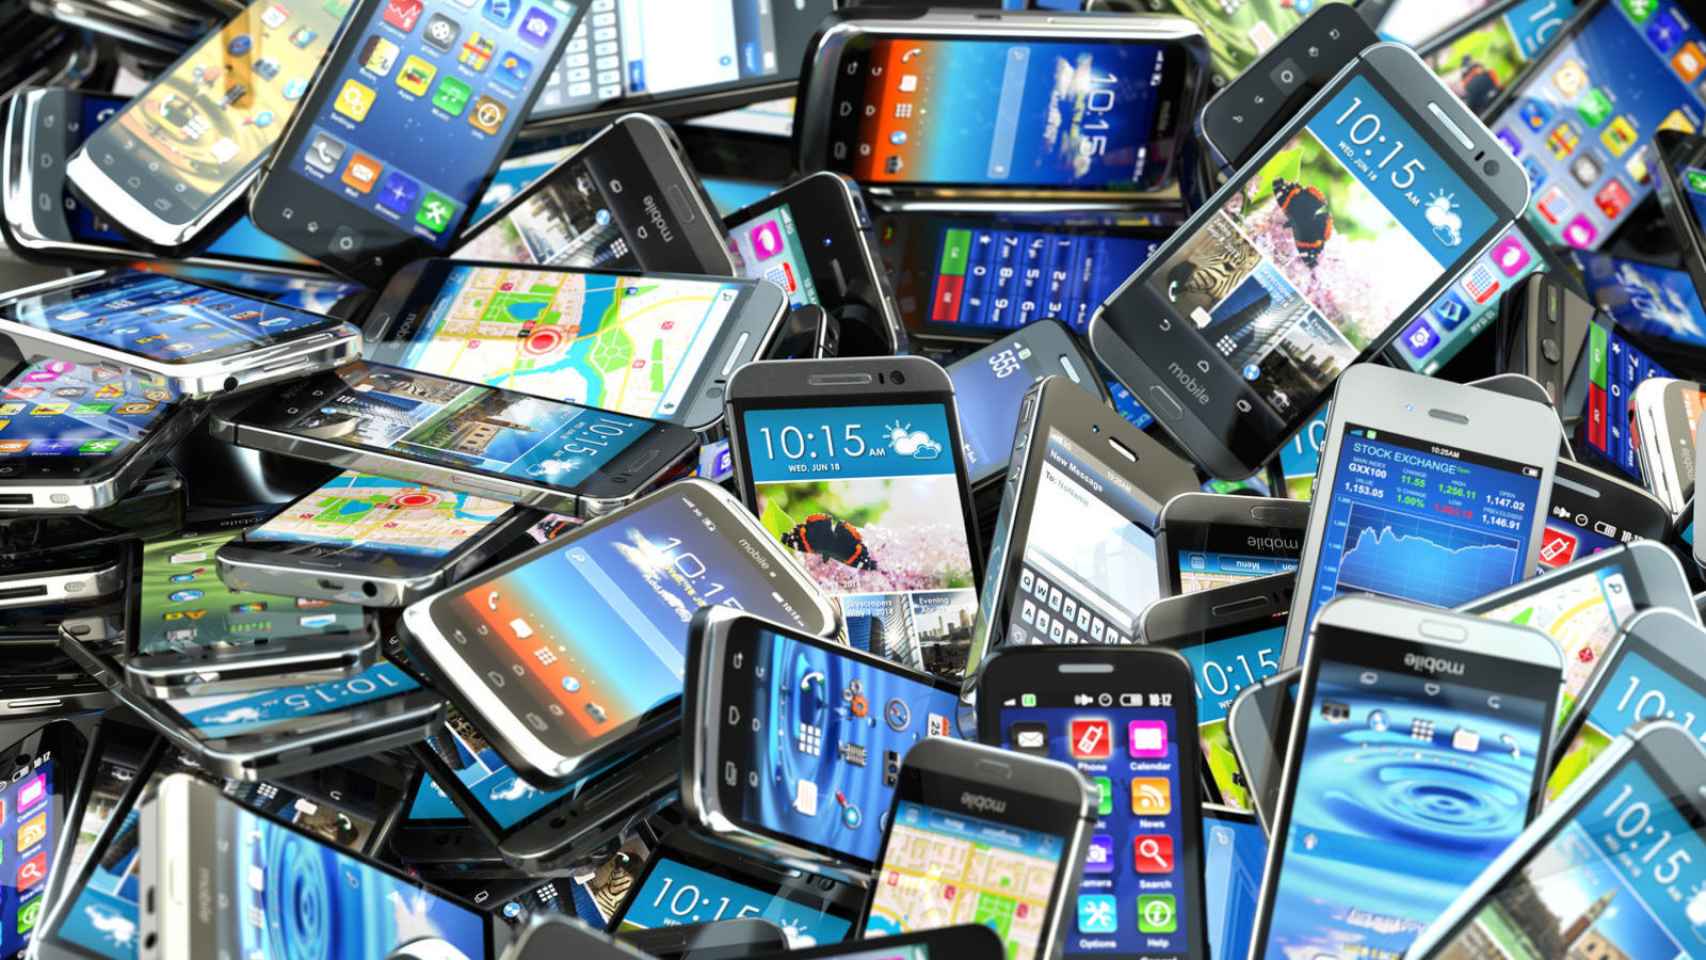 Libres Móviles y smartphones de segunda mano y baratos en